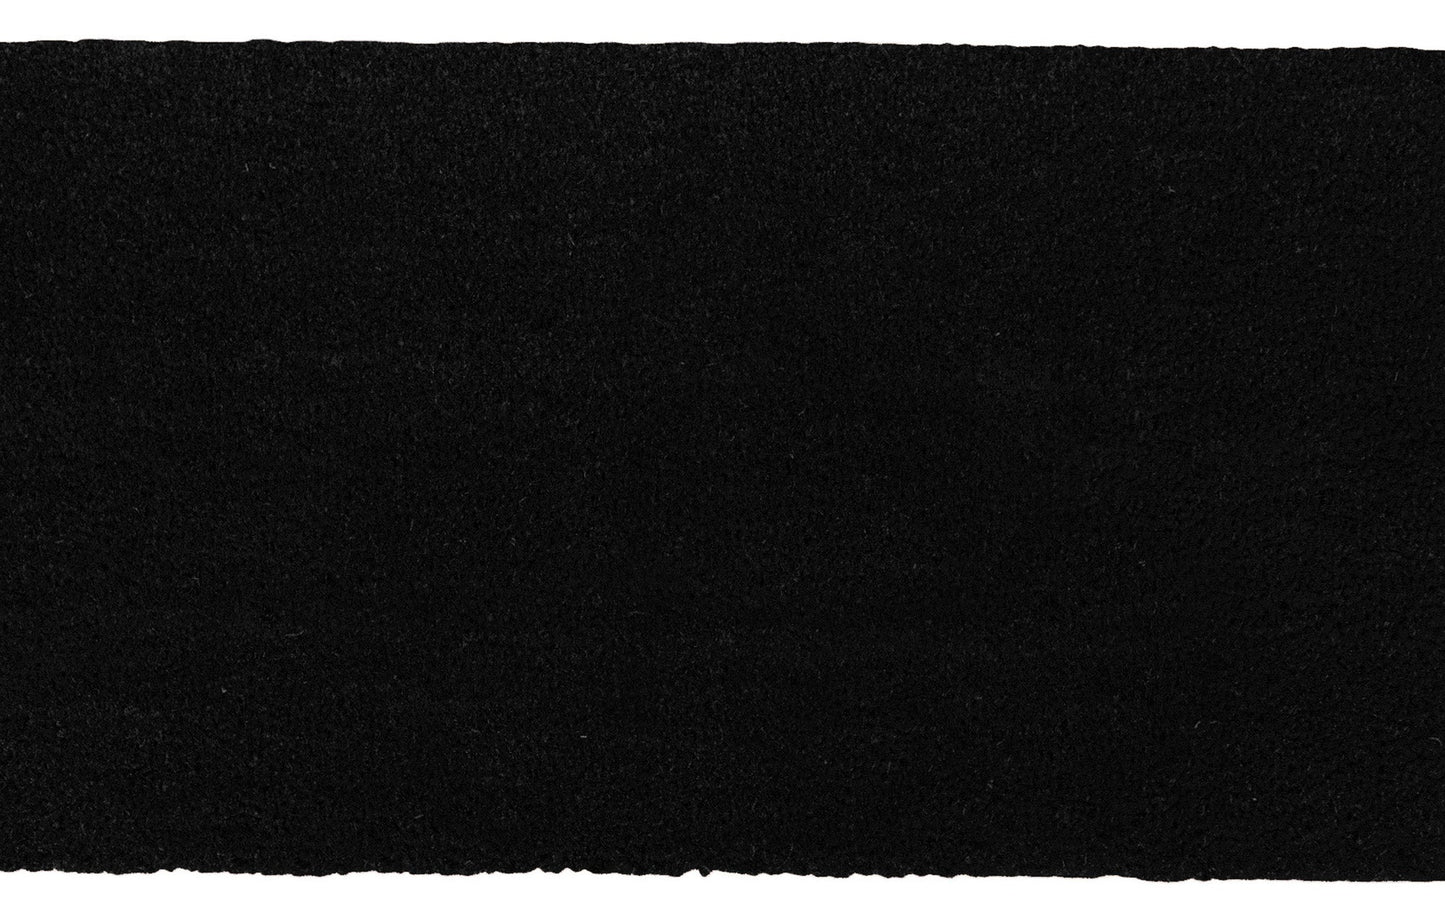 Theodore Magnus Natural Coir Doormat with non-slip backing - 17 x 30 - Outdoor / Indoor - Black